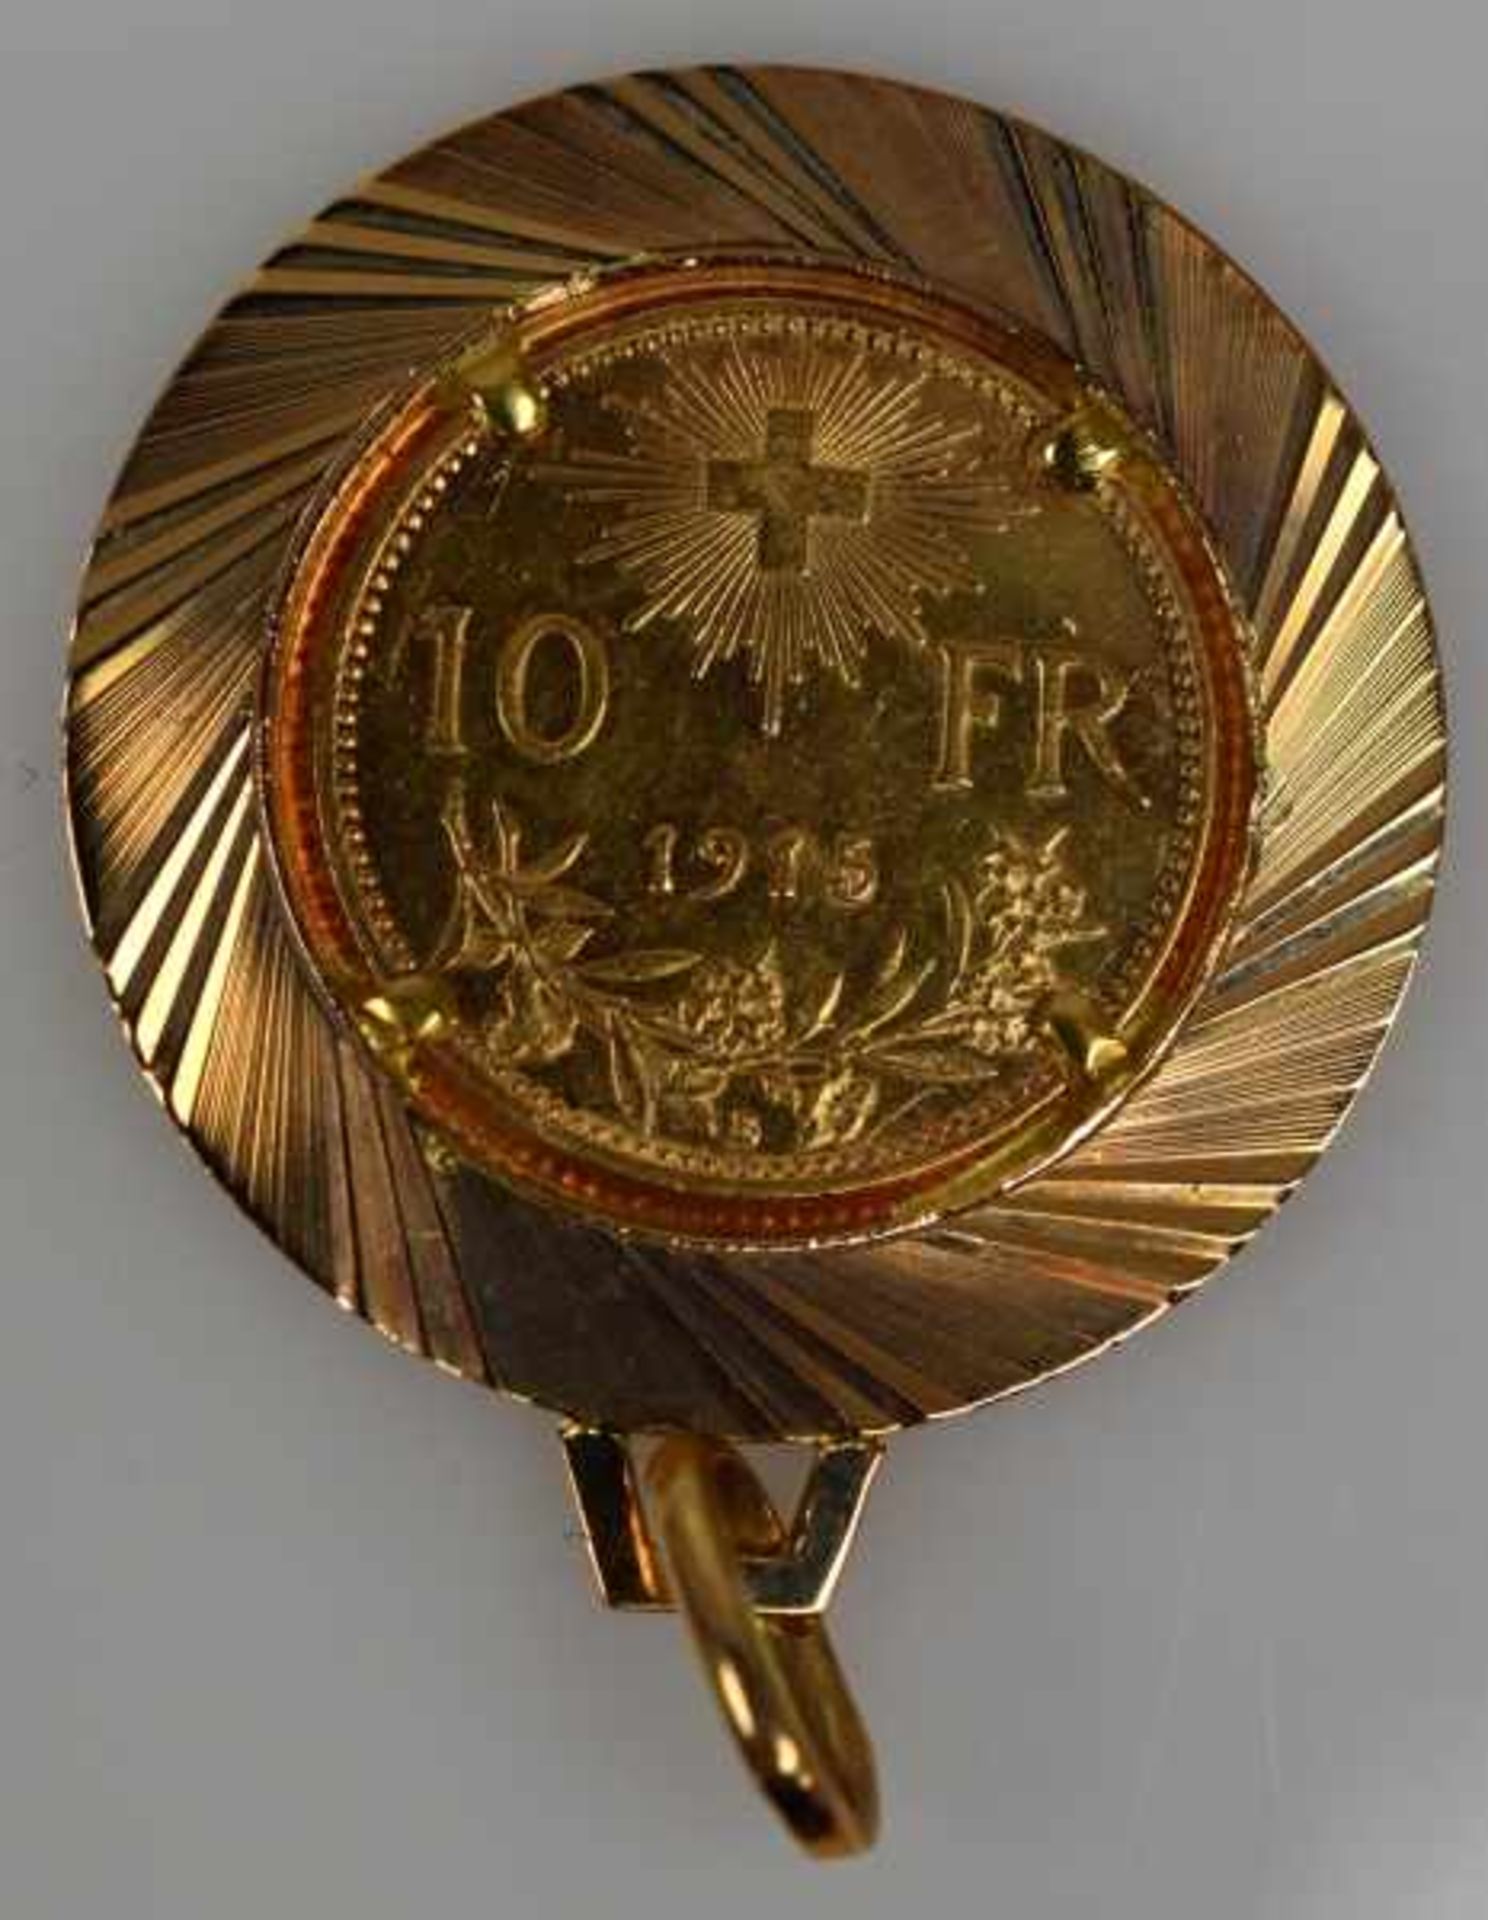 MÜNZEN-LOT 1 Münzanhänger mit Münze 10Fr. Schweiz Nachprägung in Fassung 14ct, 8,3g -1 Goldmünze 200 - Bild 17 aus 17